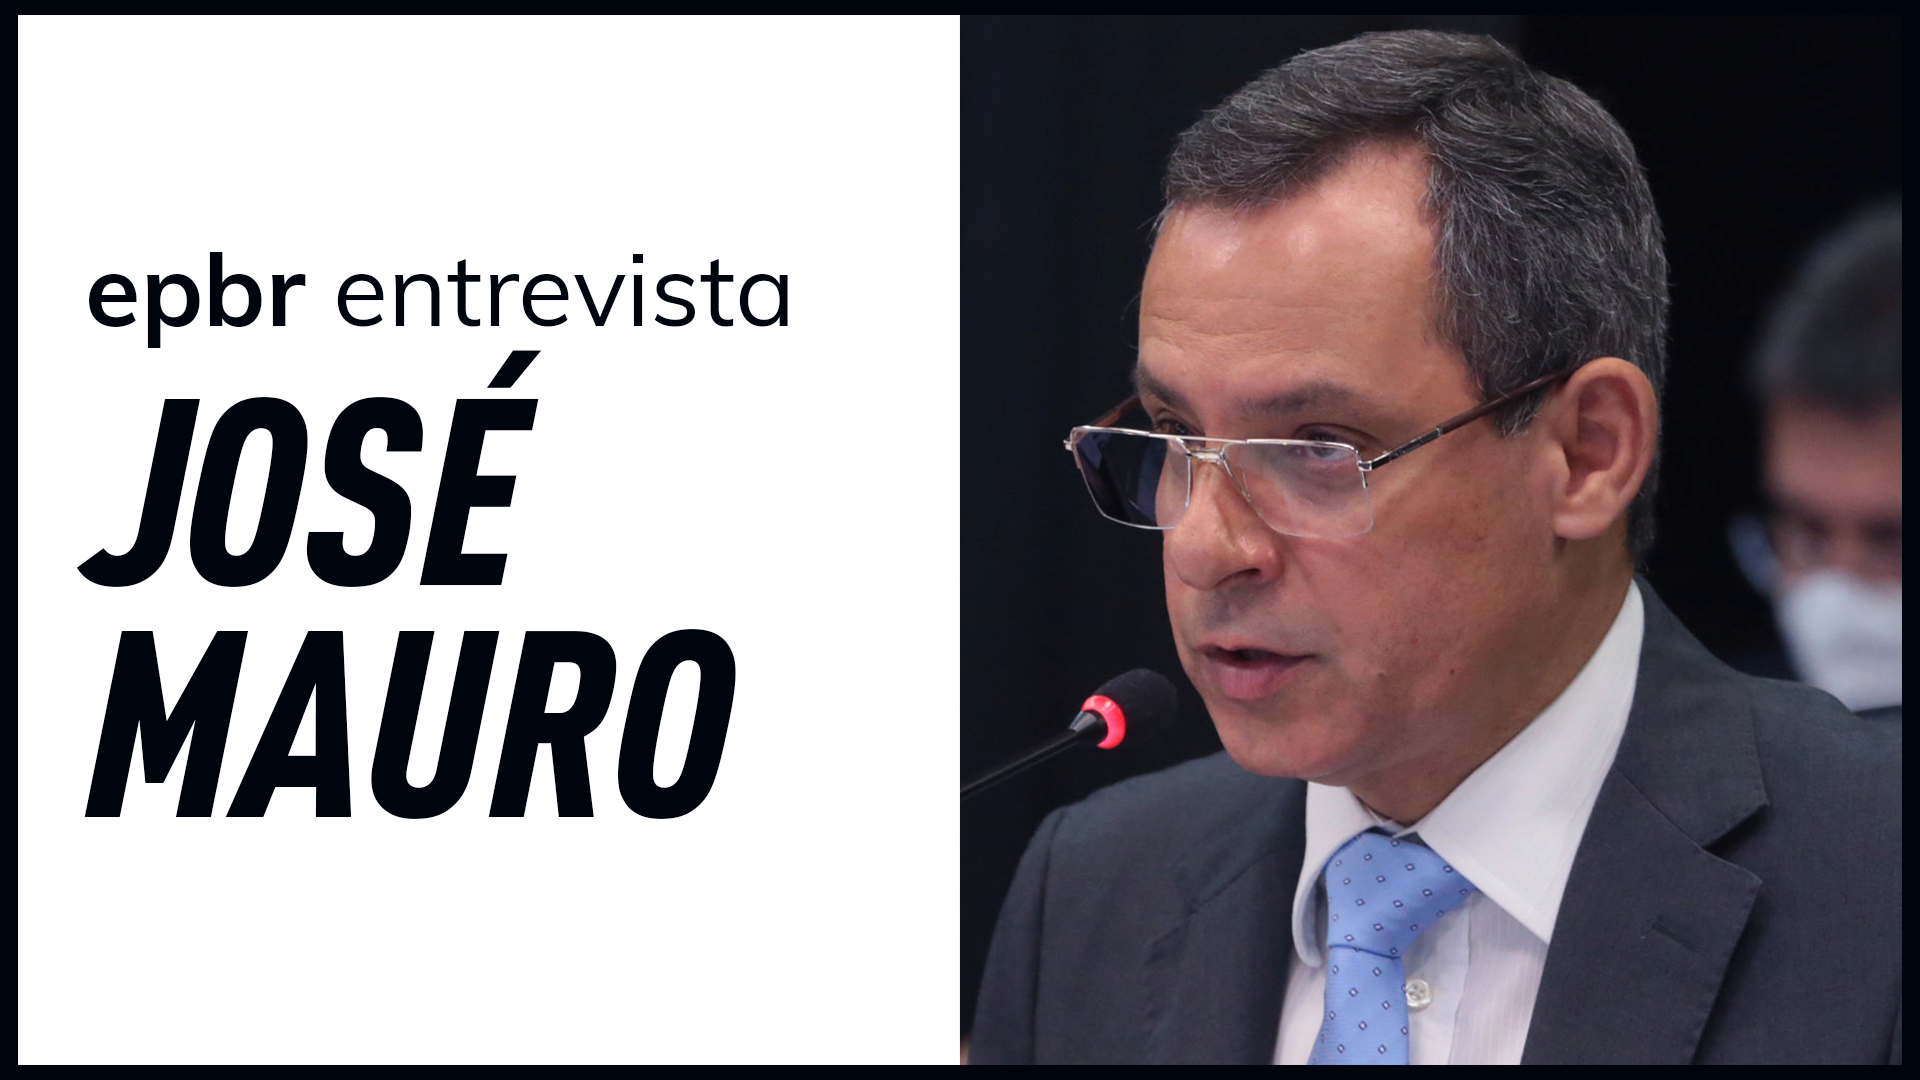 José Mauro é Secretário de Petróleo, Gás Natural e Biocombustíveis do Ministério de Minas e Energia (MME)